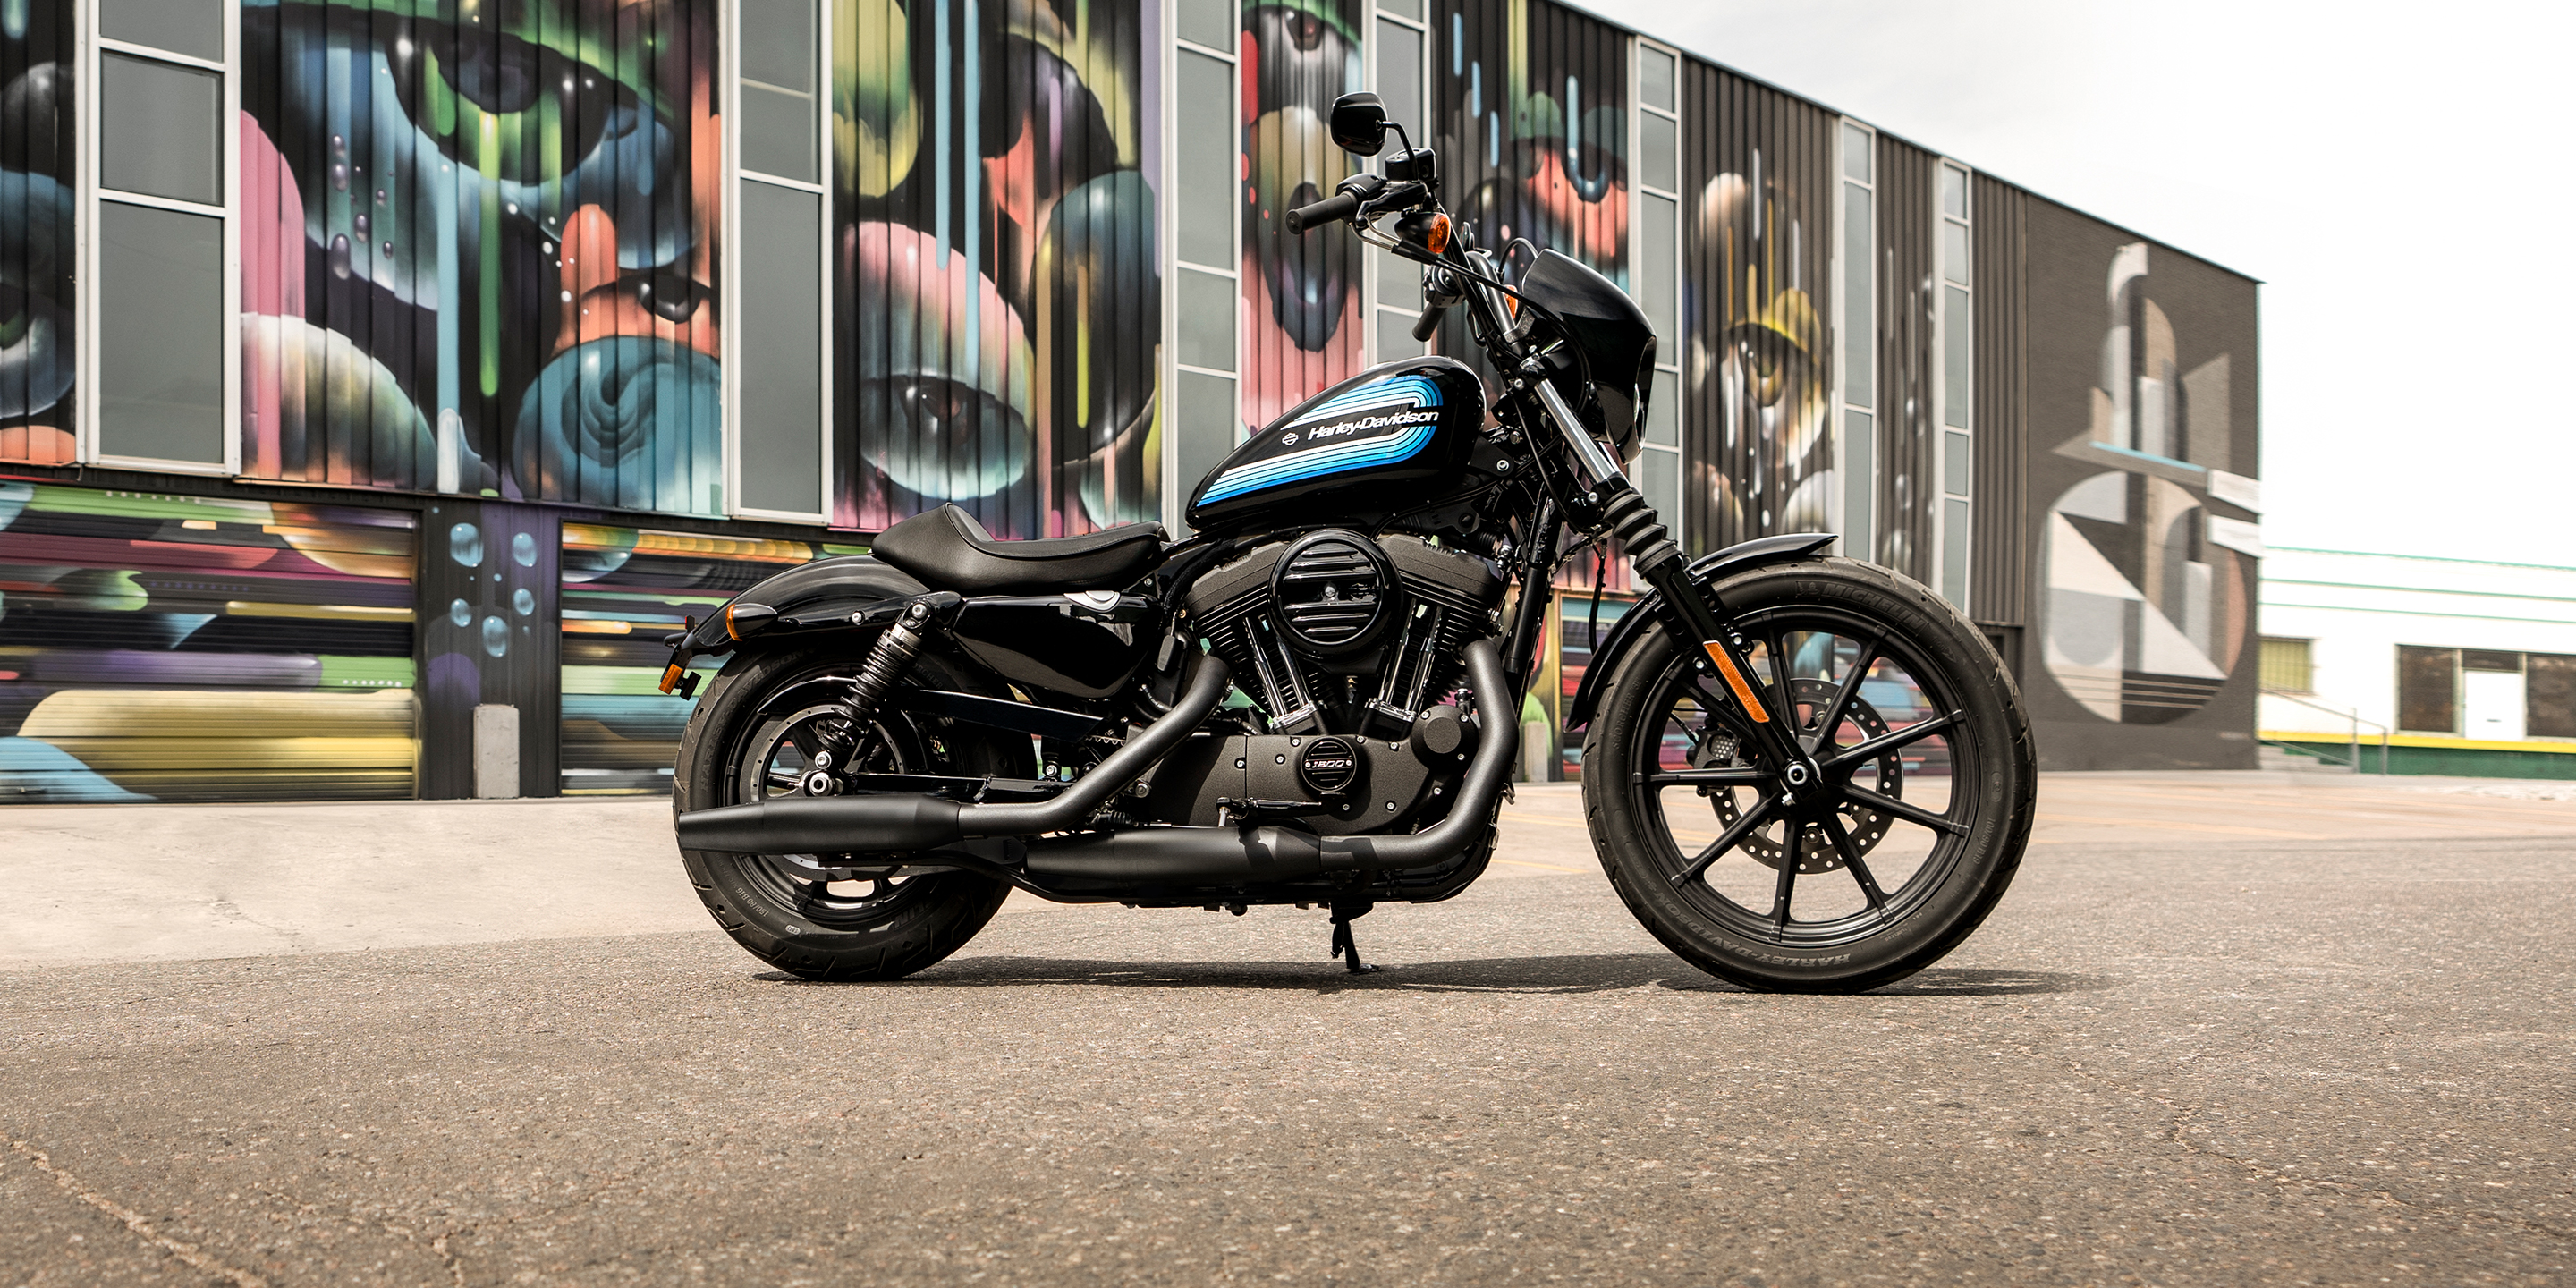 Motocicleta Iron 1200 2019  Harley  Davidson  Brasil 